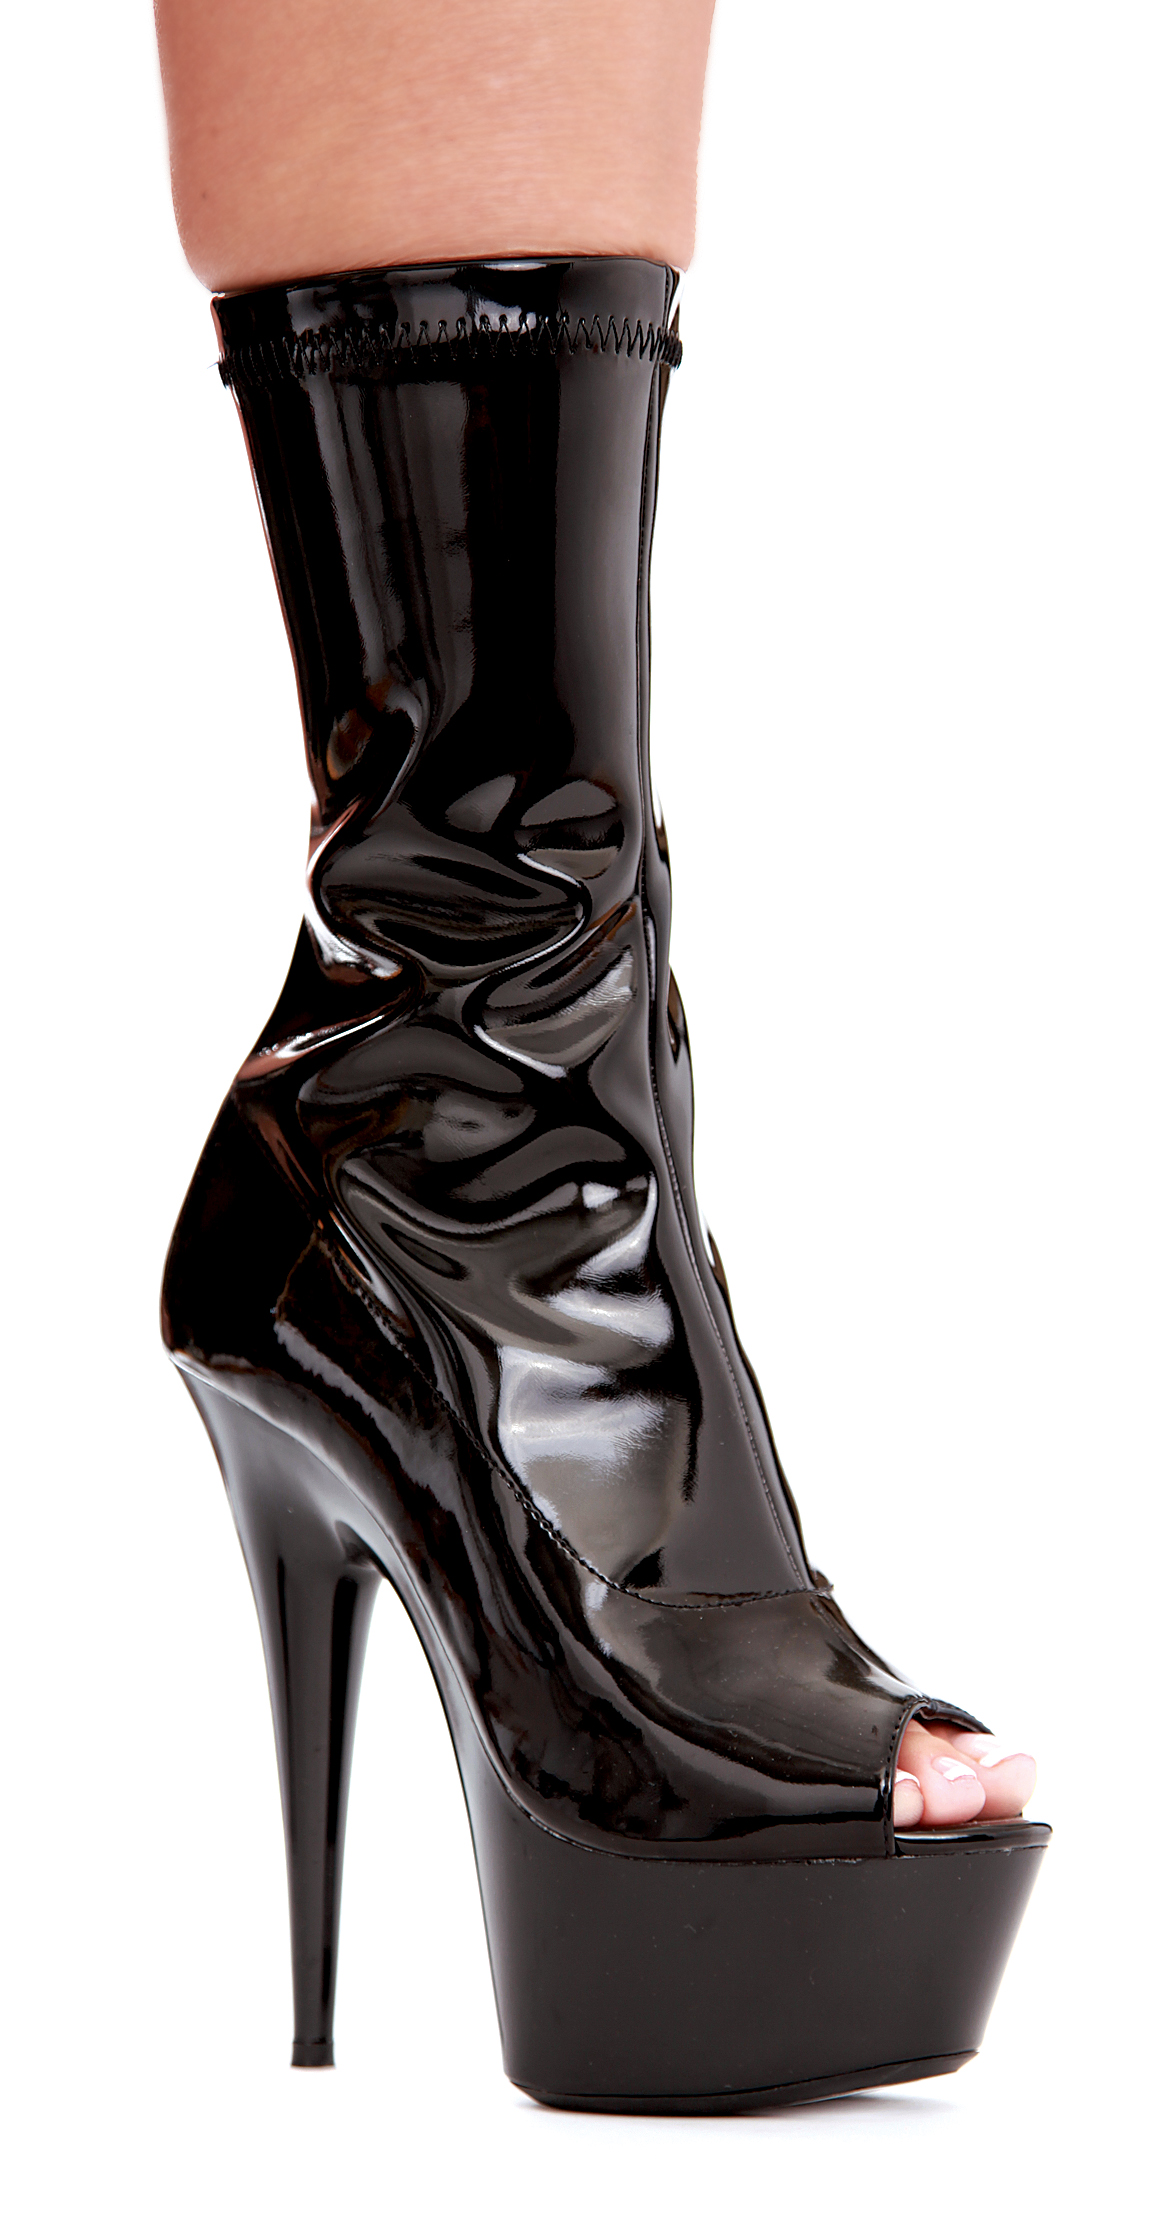 Vanna - 6 Inch Heel Black Peep-Toe Calf Boots